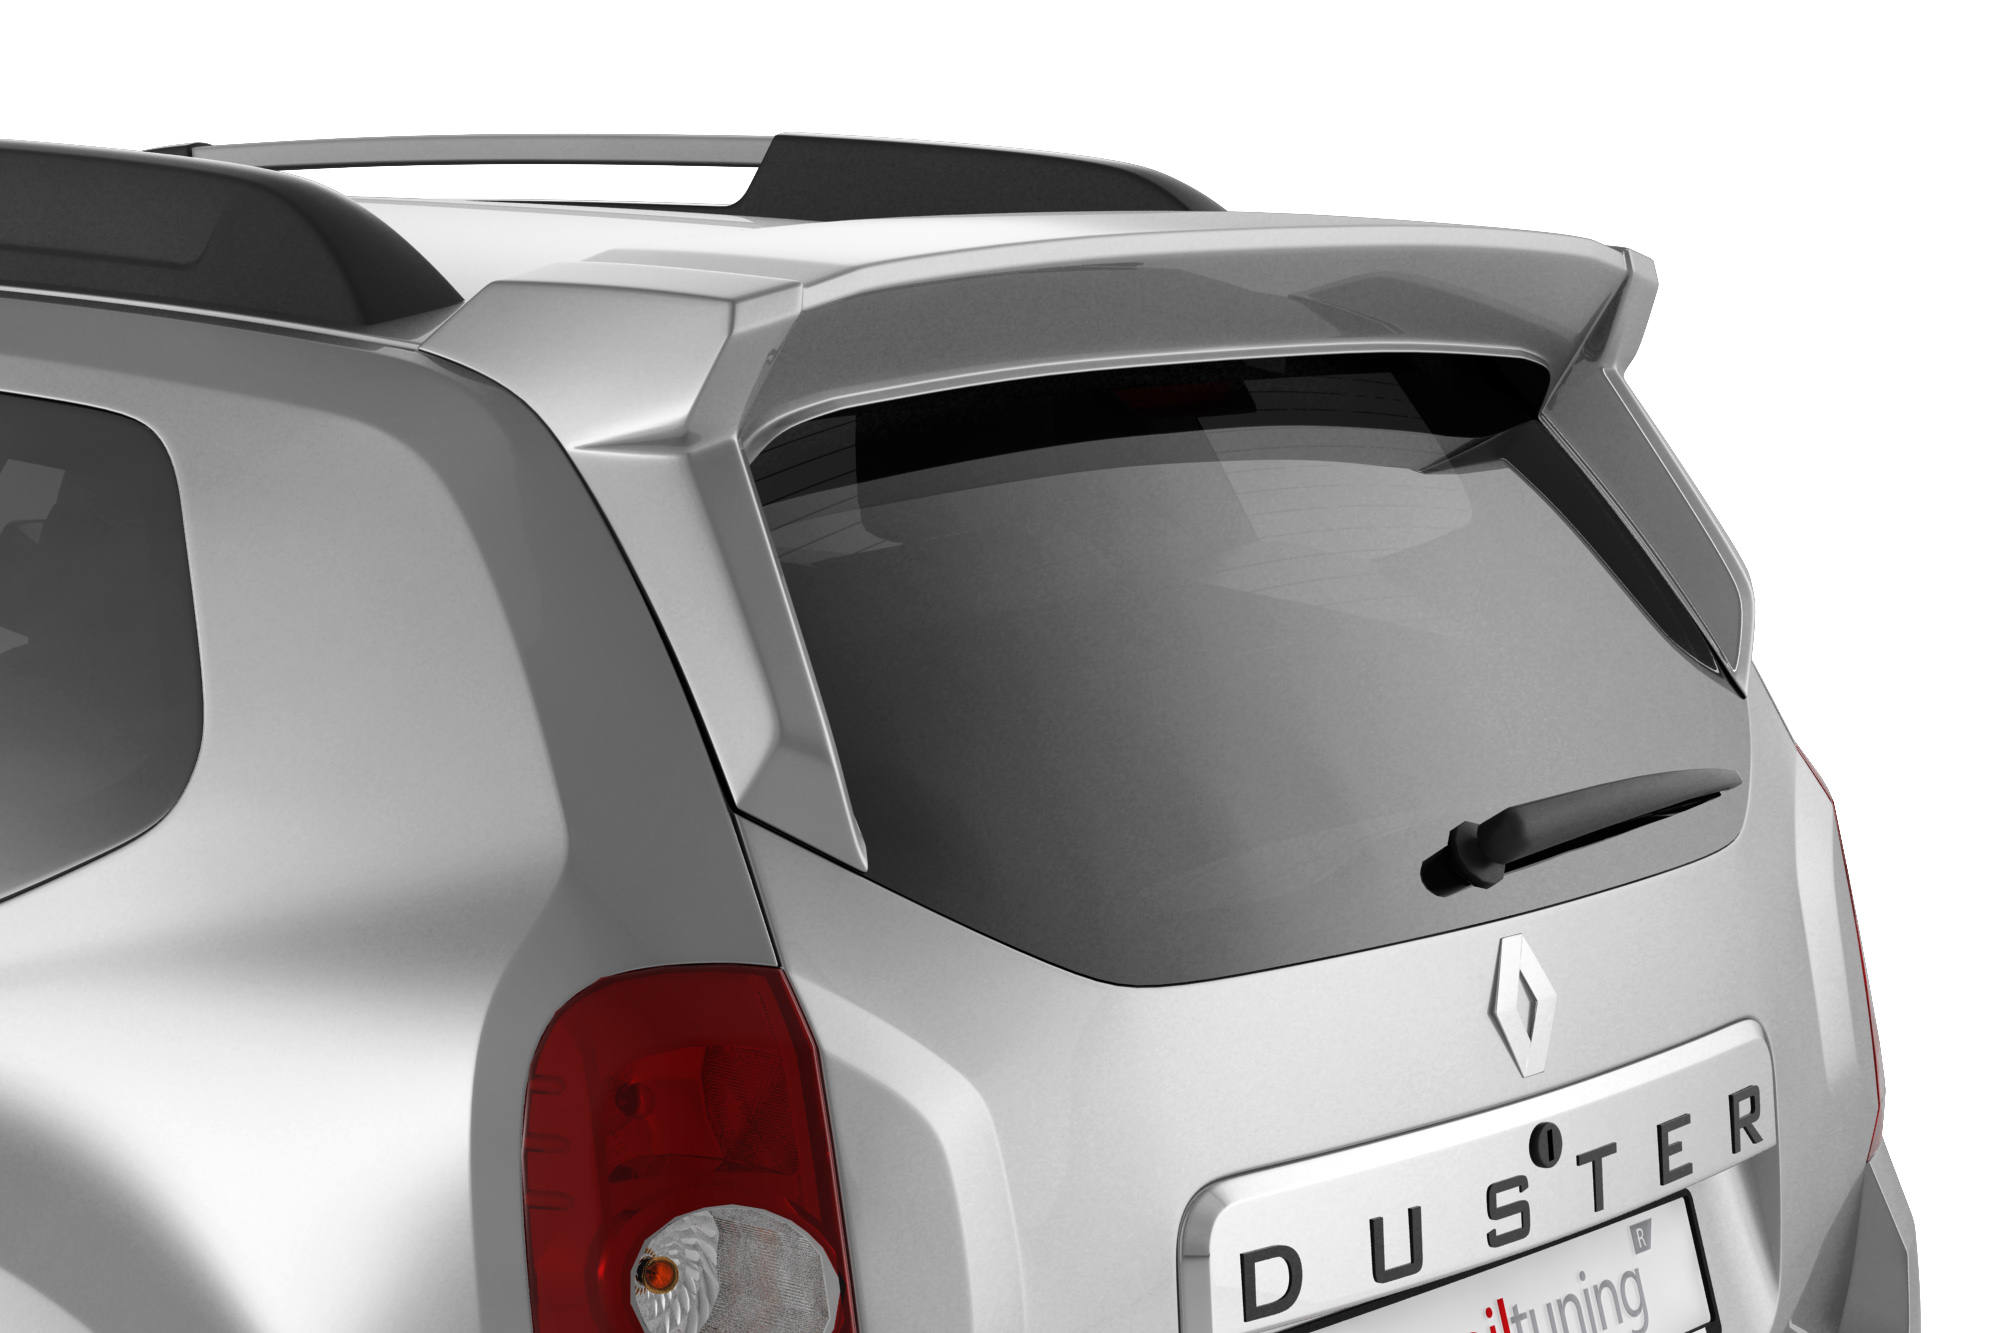 Спойлер Чистое стекло Renault Duster(2012-) РТ RDU663202